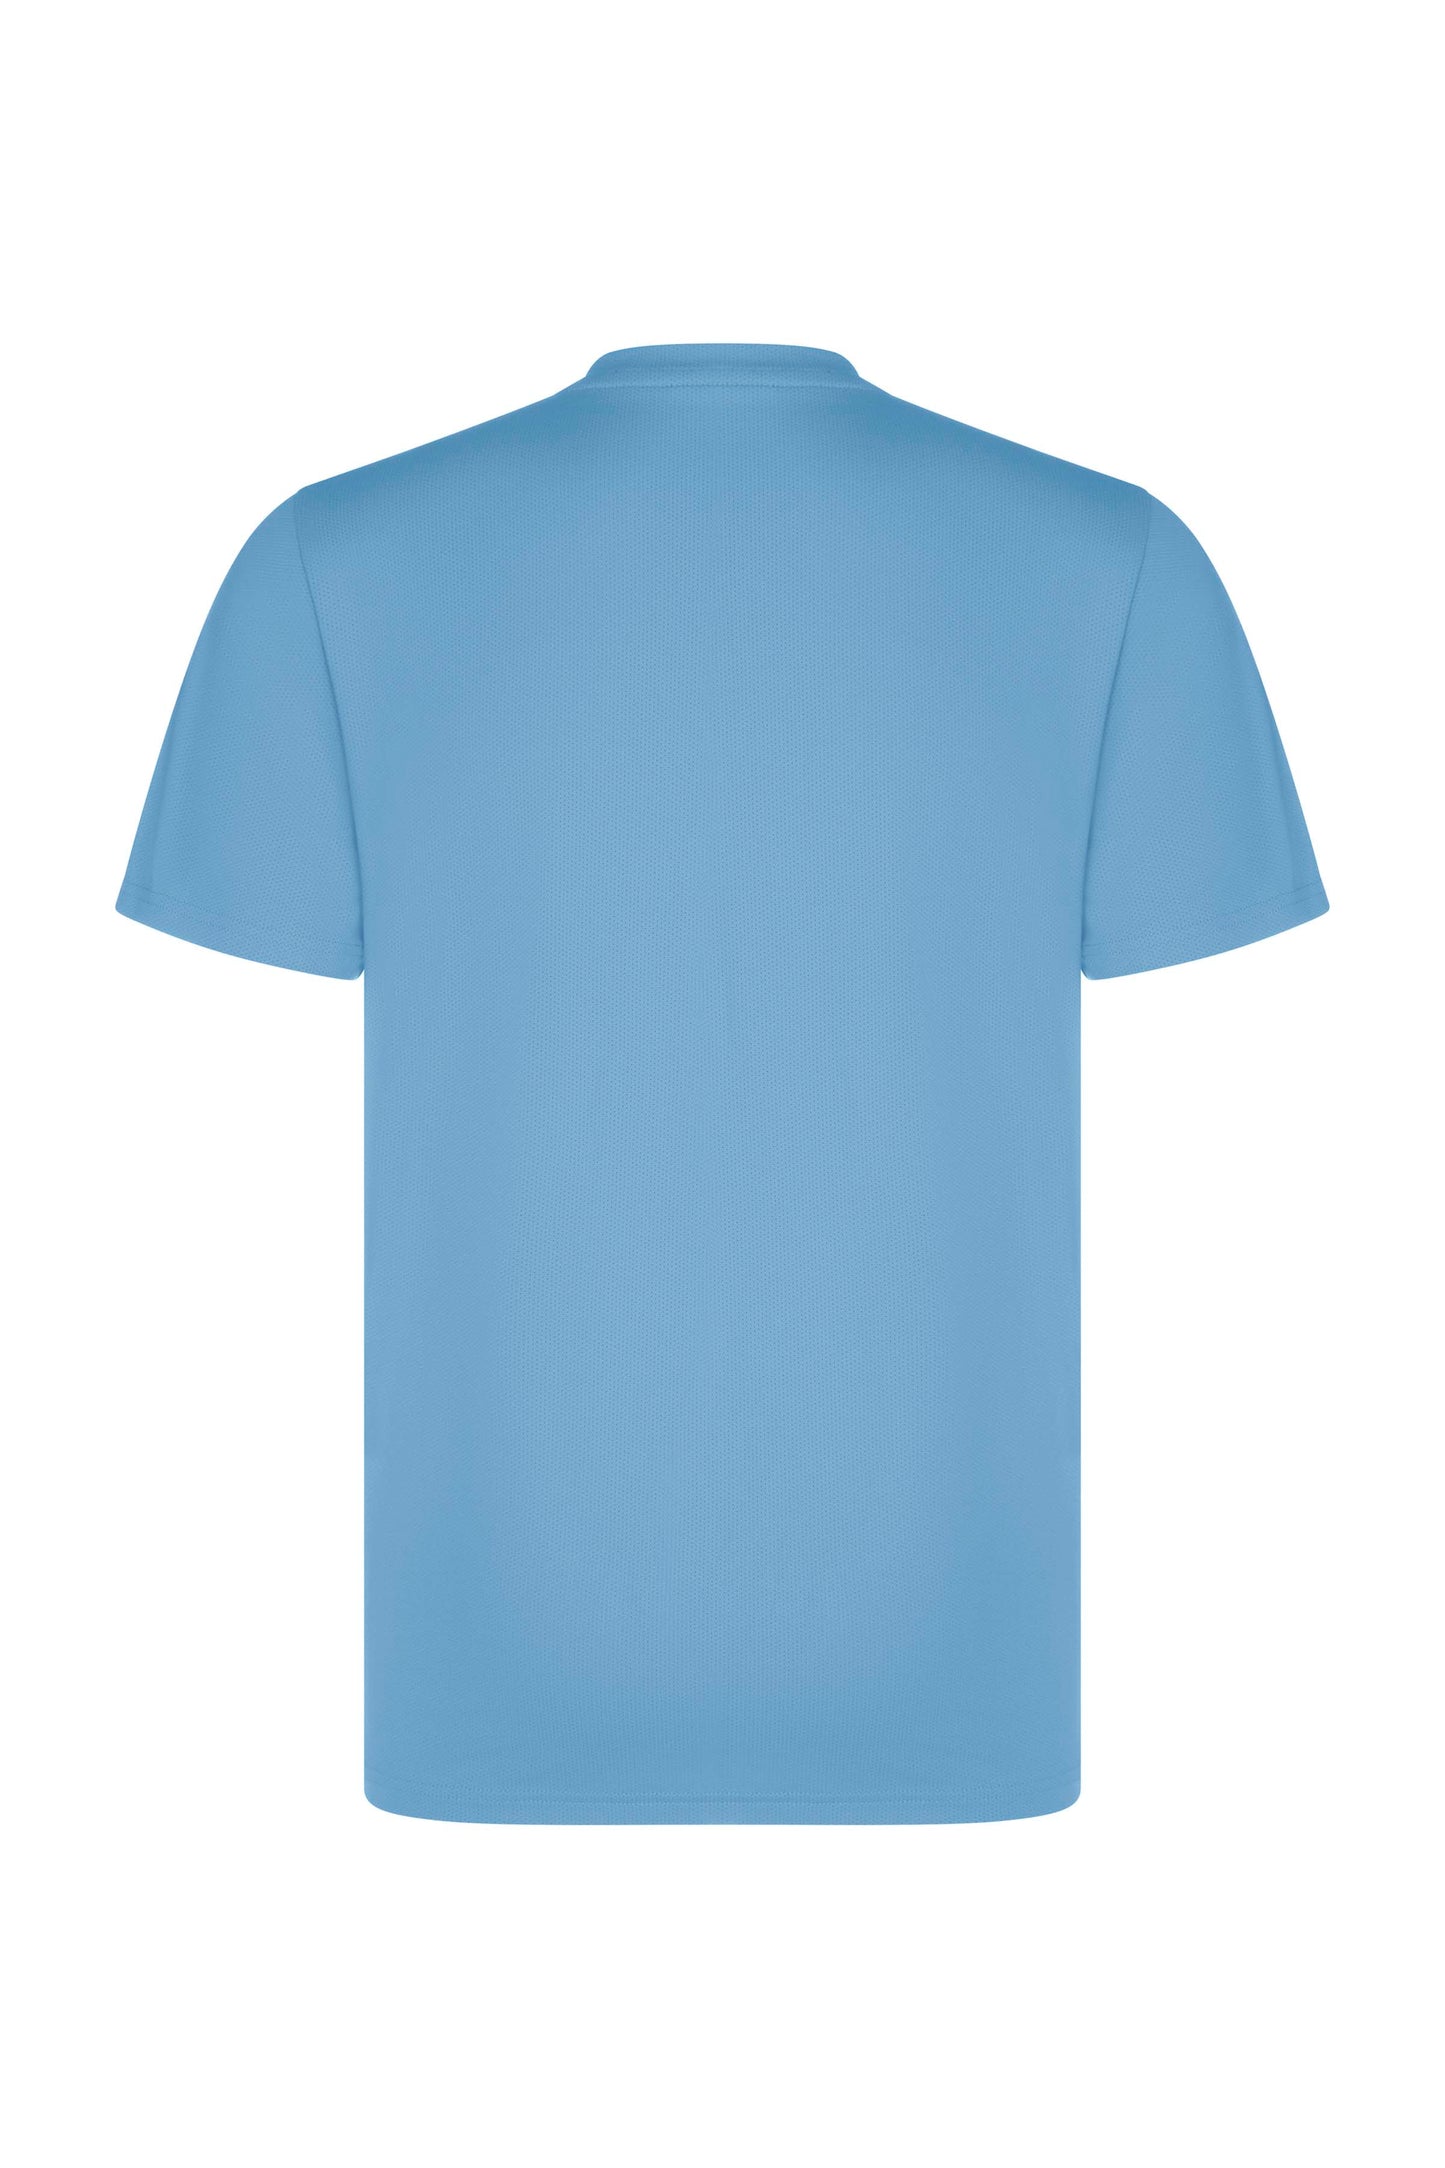 Left Chest Logo T-Shirt - Baby Blue